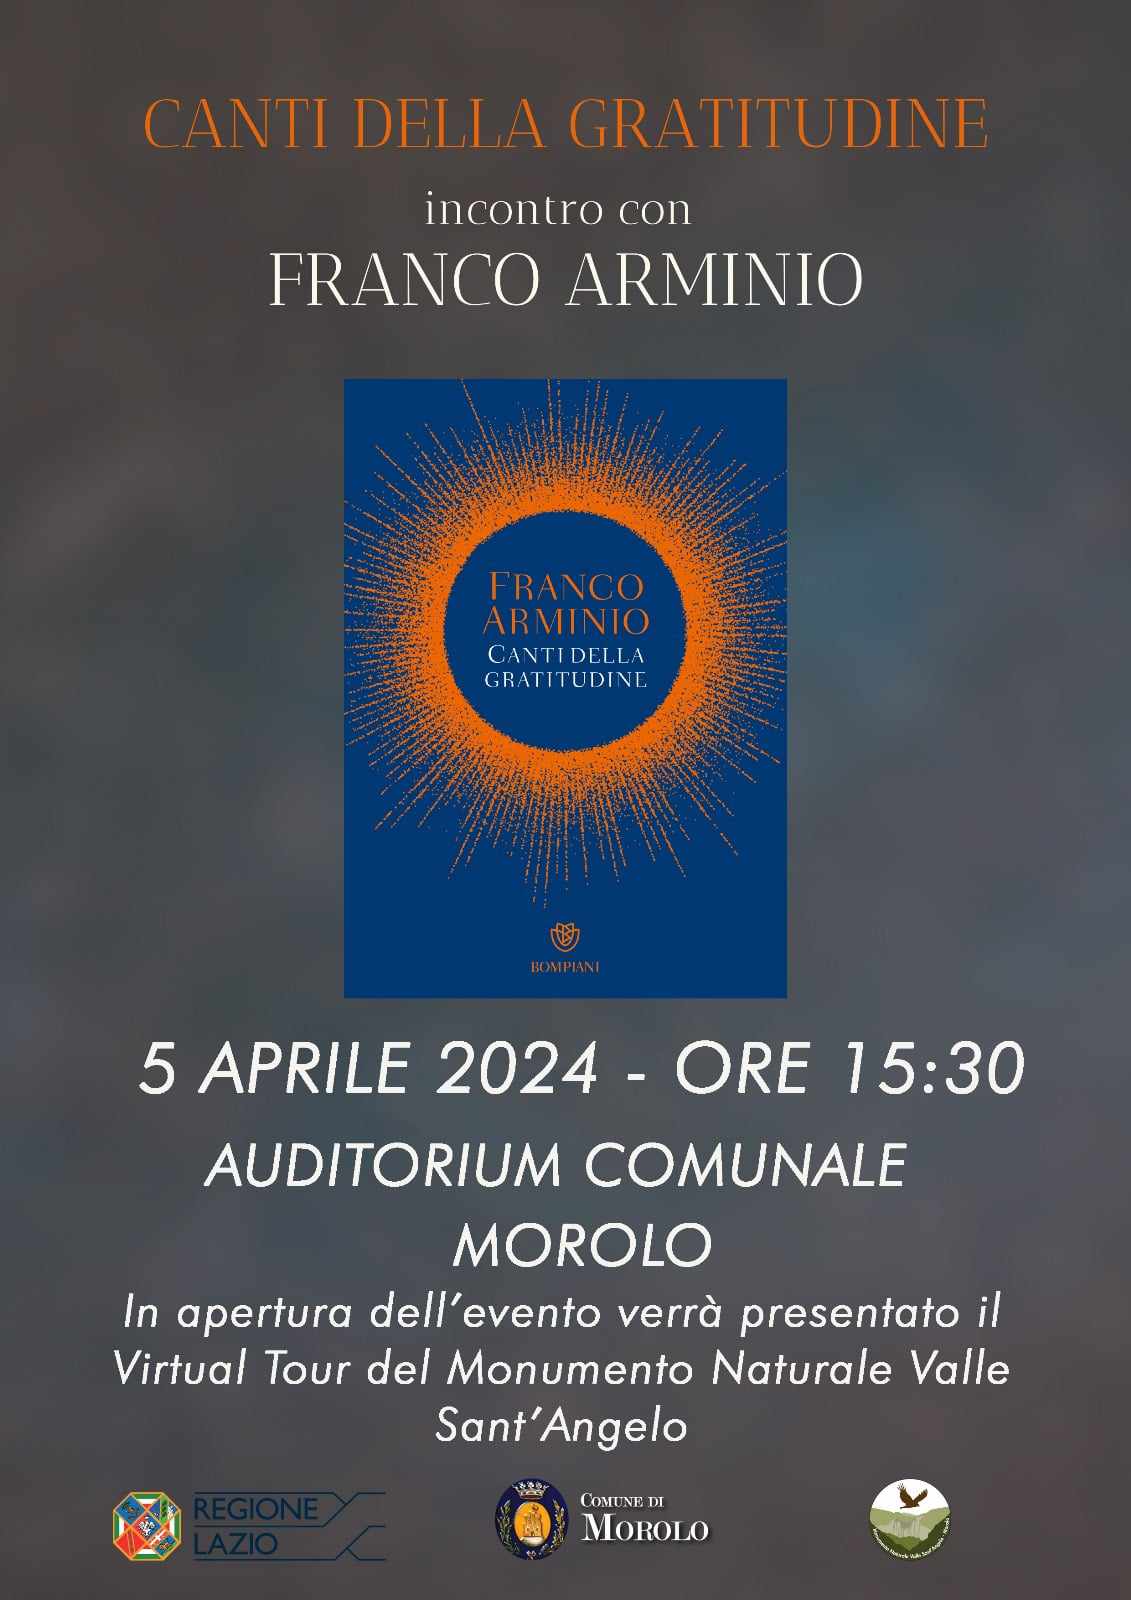 Morolo: Canti della gratitudine, incontro con Franco Armino @ Auditorium Comunale Morolo